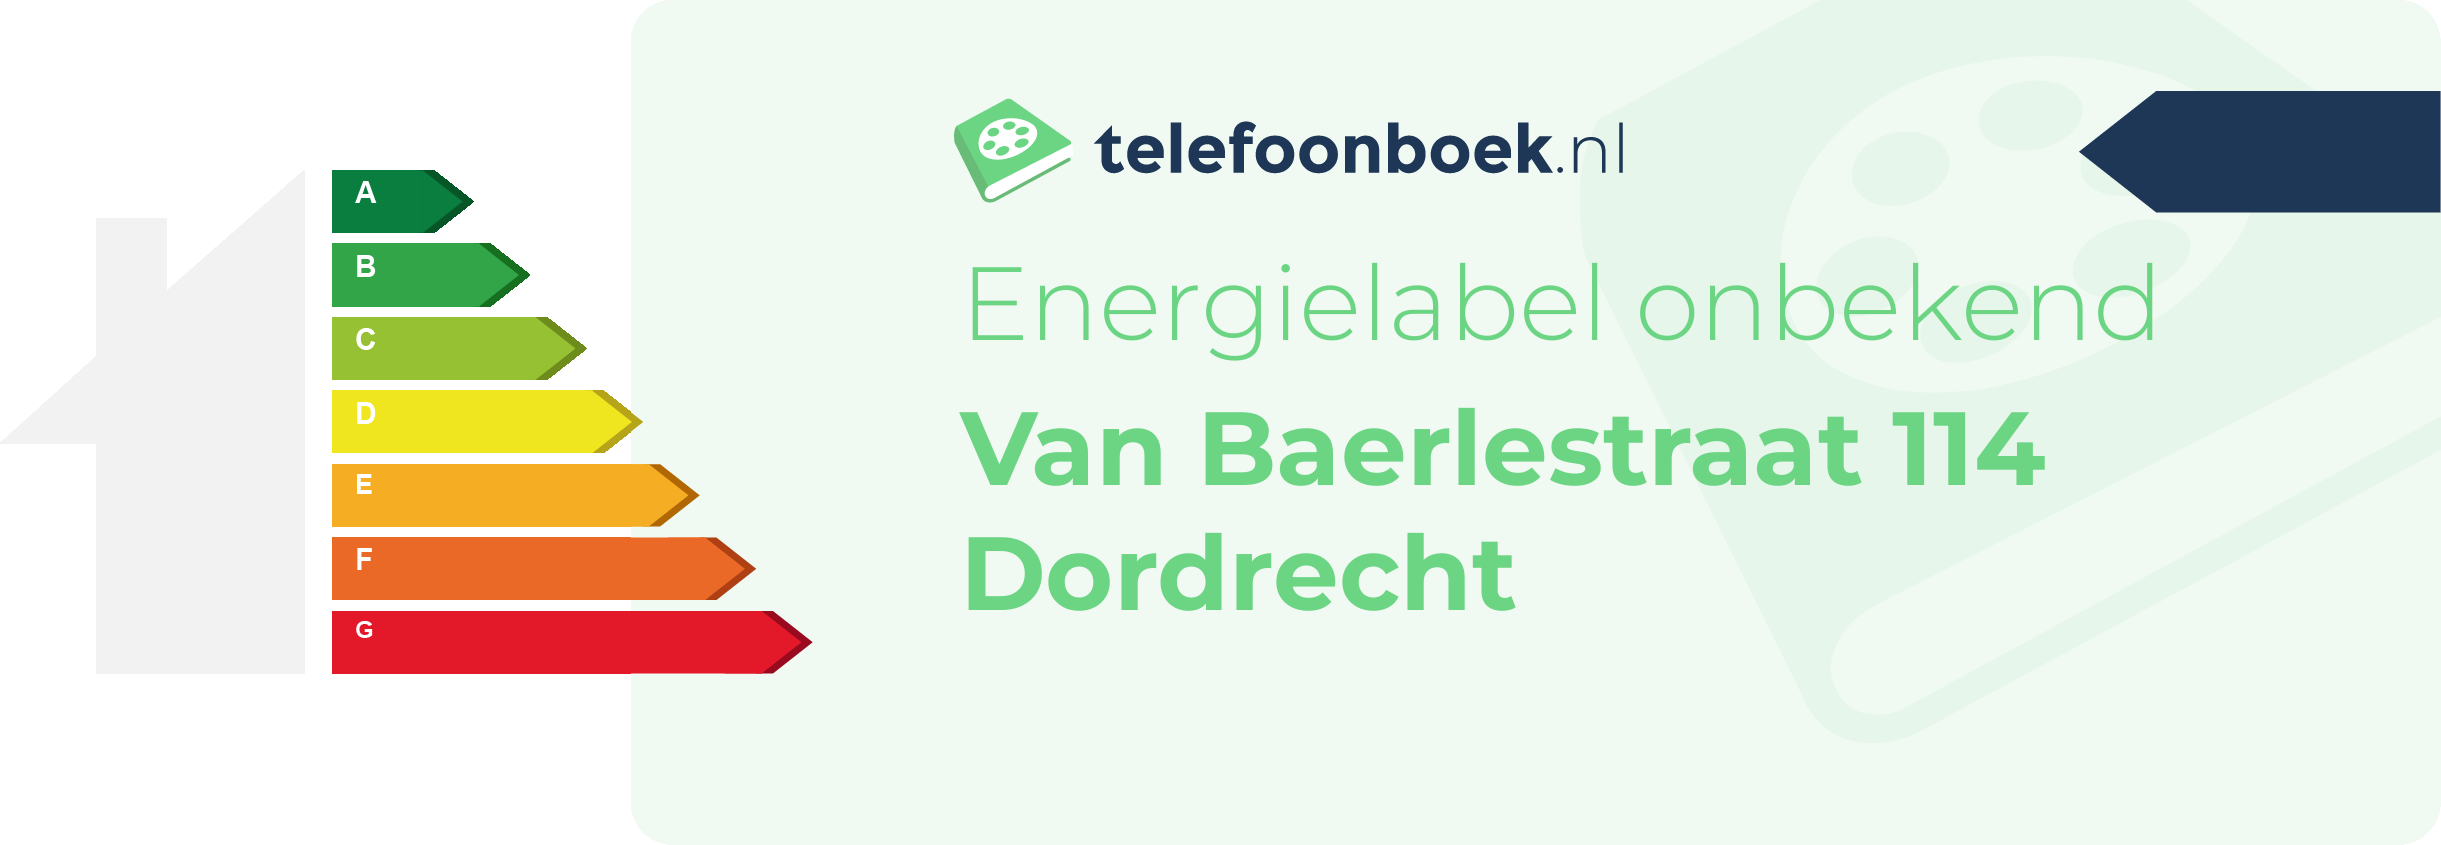 Energielabel Van Baerlestraat 114 Dordrecht